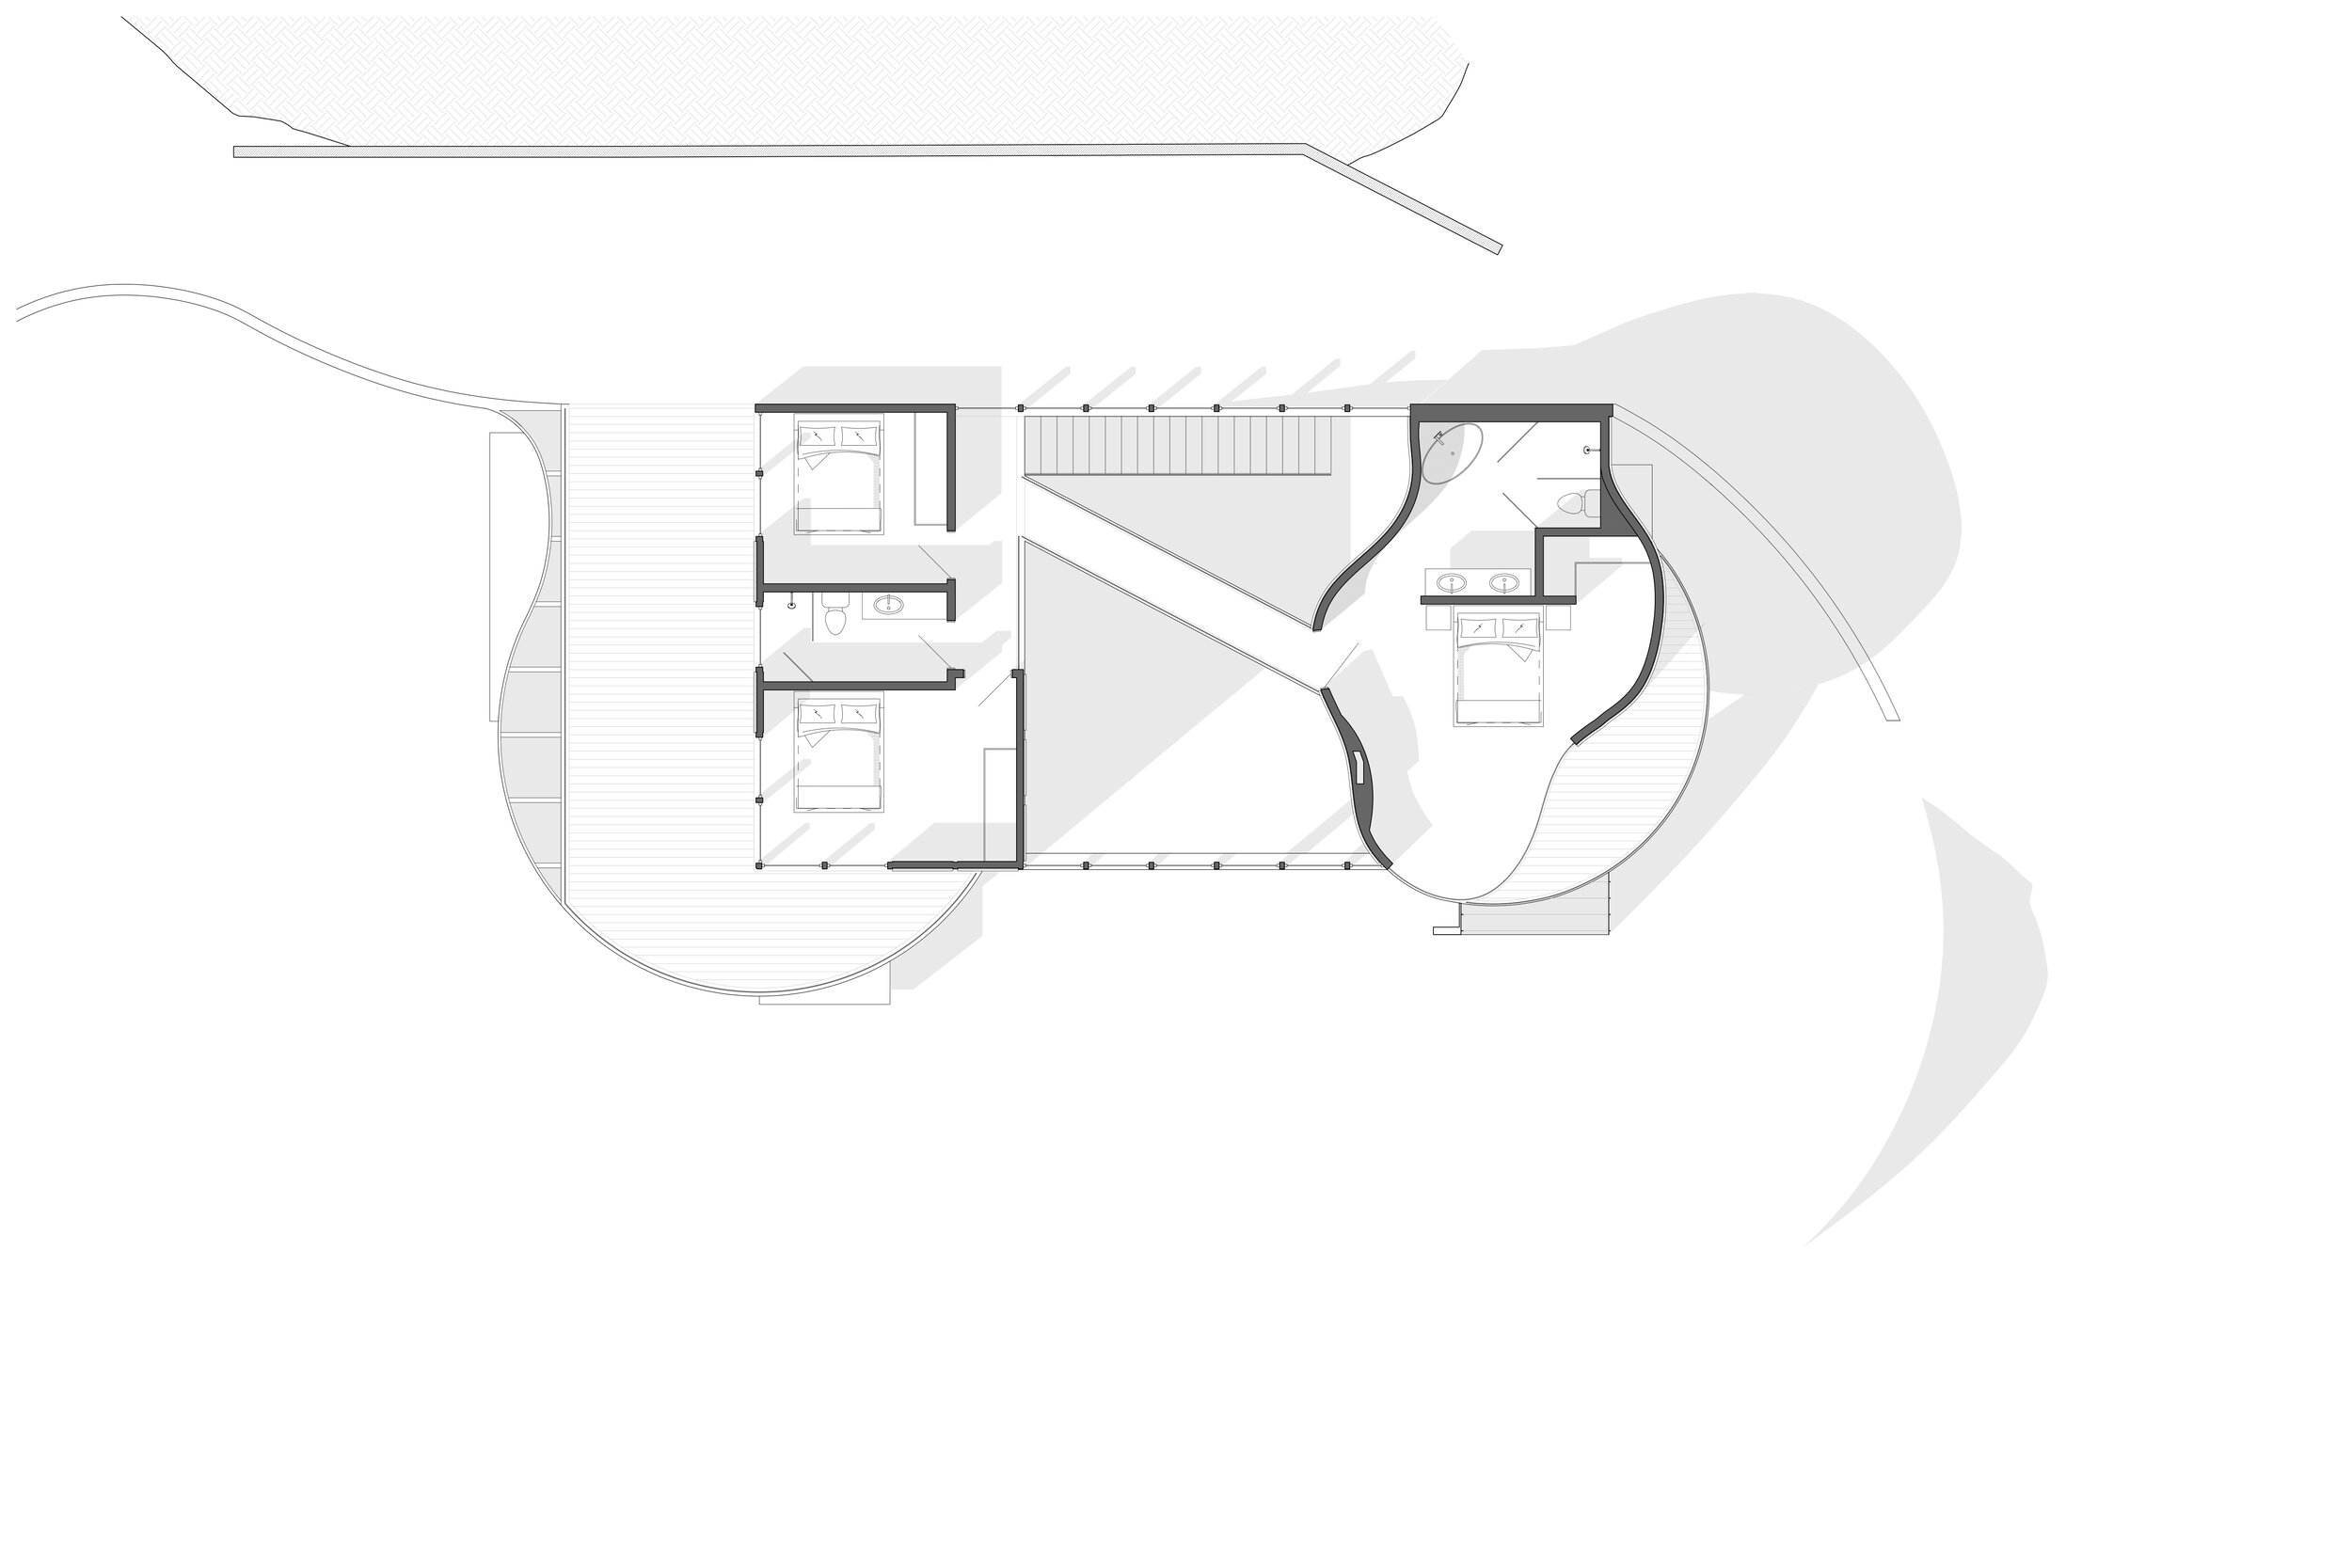 ED_Publication - Second Floor Plan.jpg